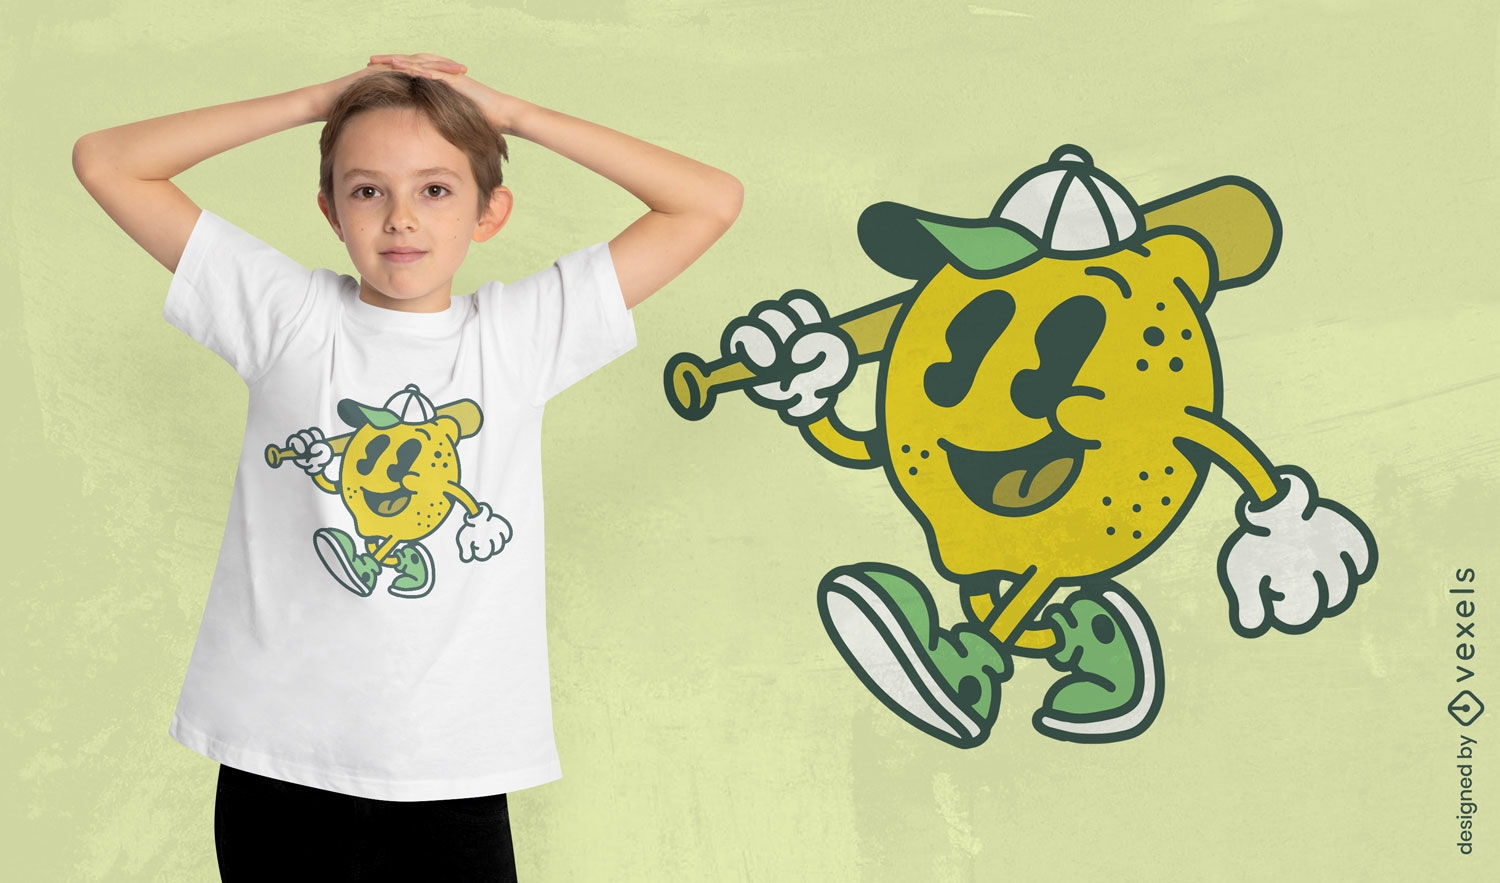 Lemon baseball player t-shirt design